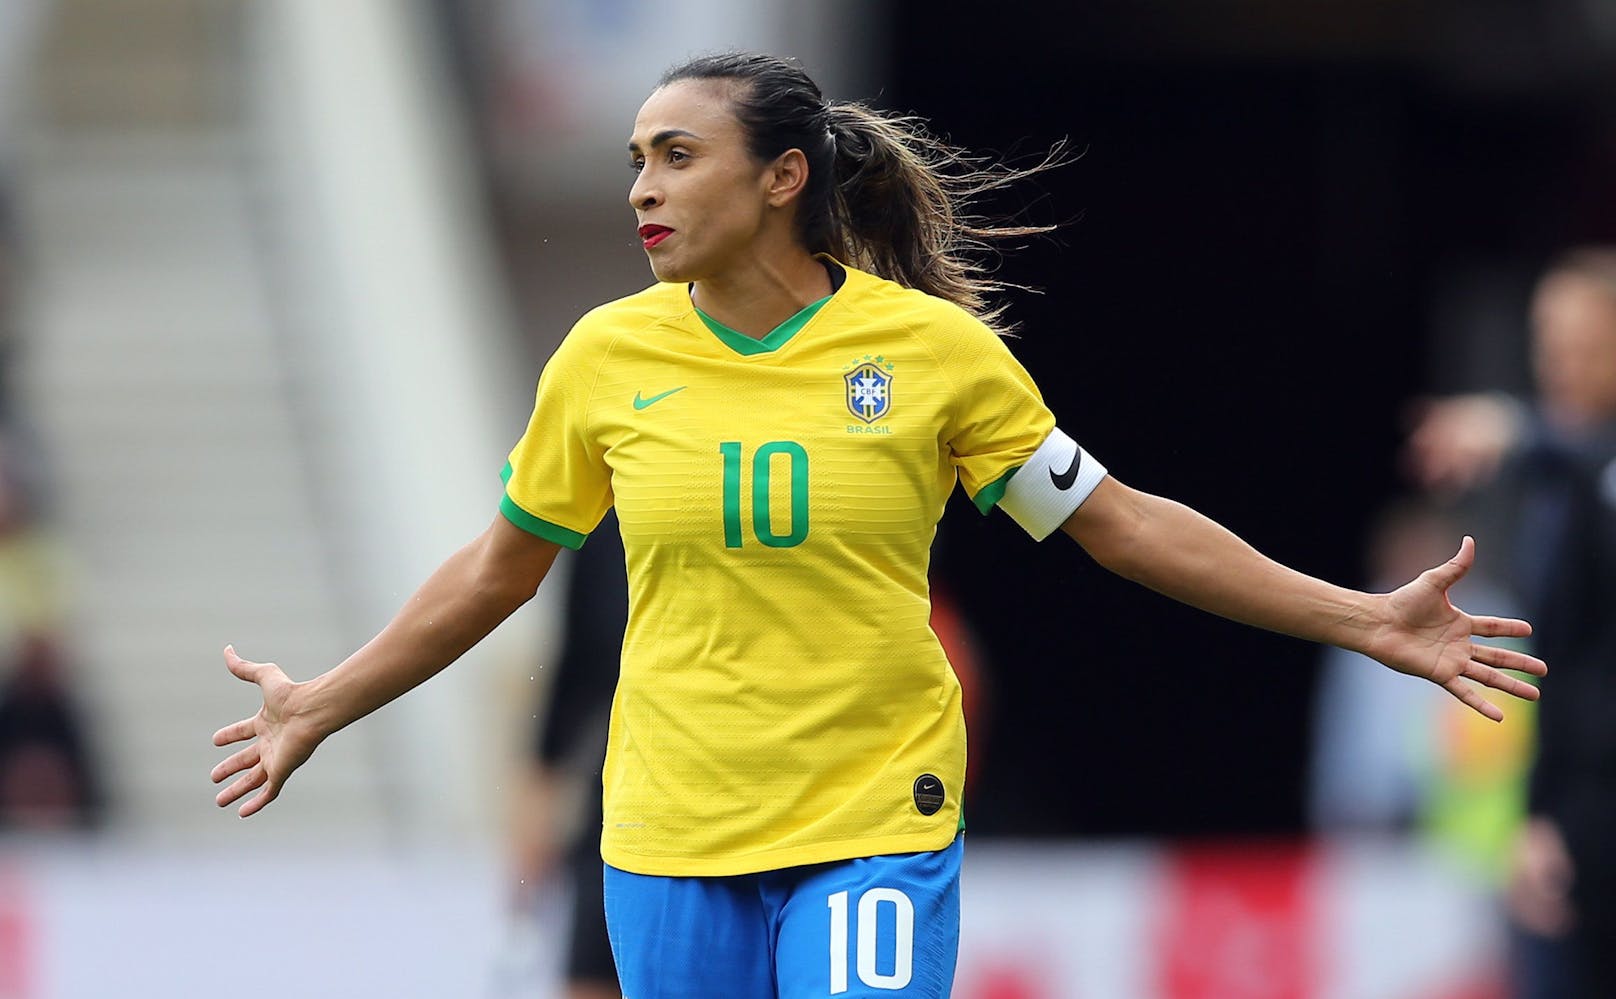 Neben Rapinoe ist Marta Vieira da Silva der Superstar im Frauenfußball. Die Weltfußballerin von 2010 zählt auch elf Jahre später noch zur absoluten Elite, will Brasilien zum Titel führen.